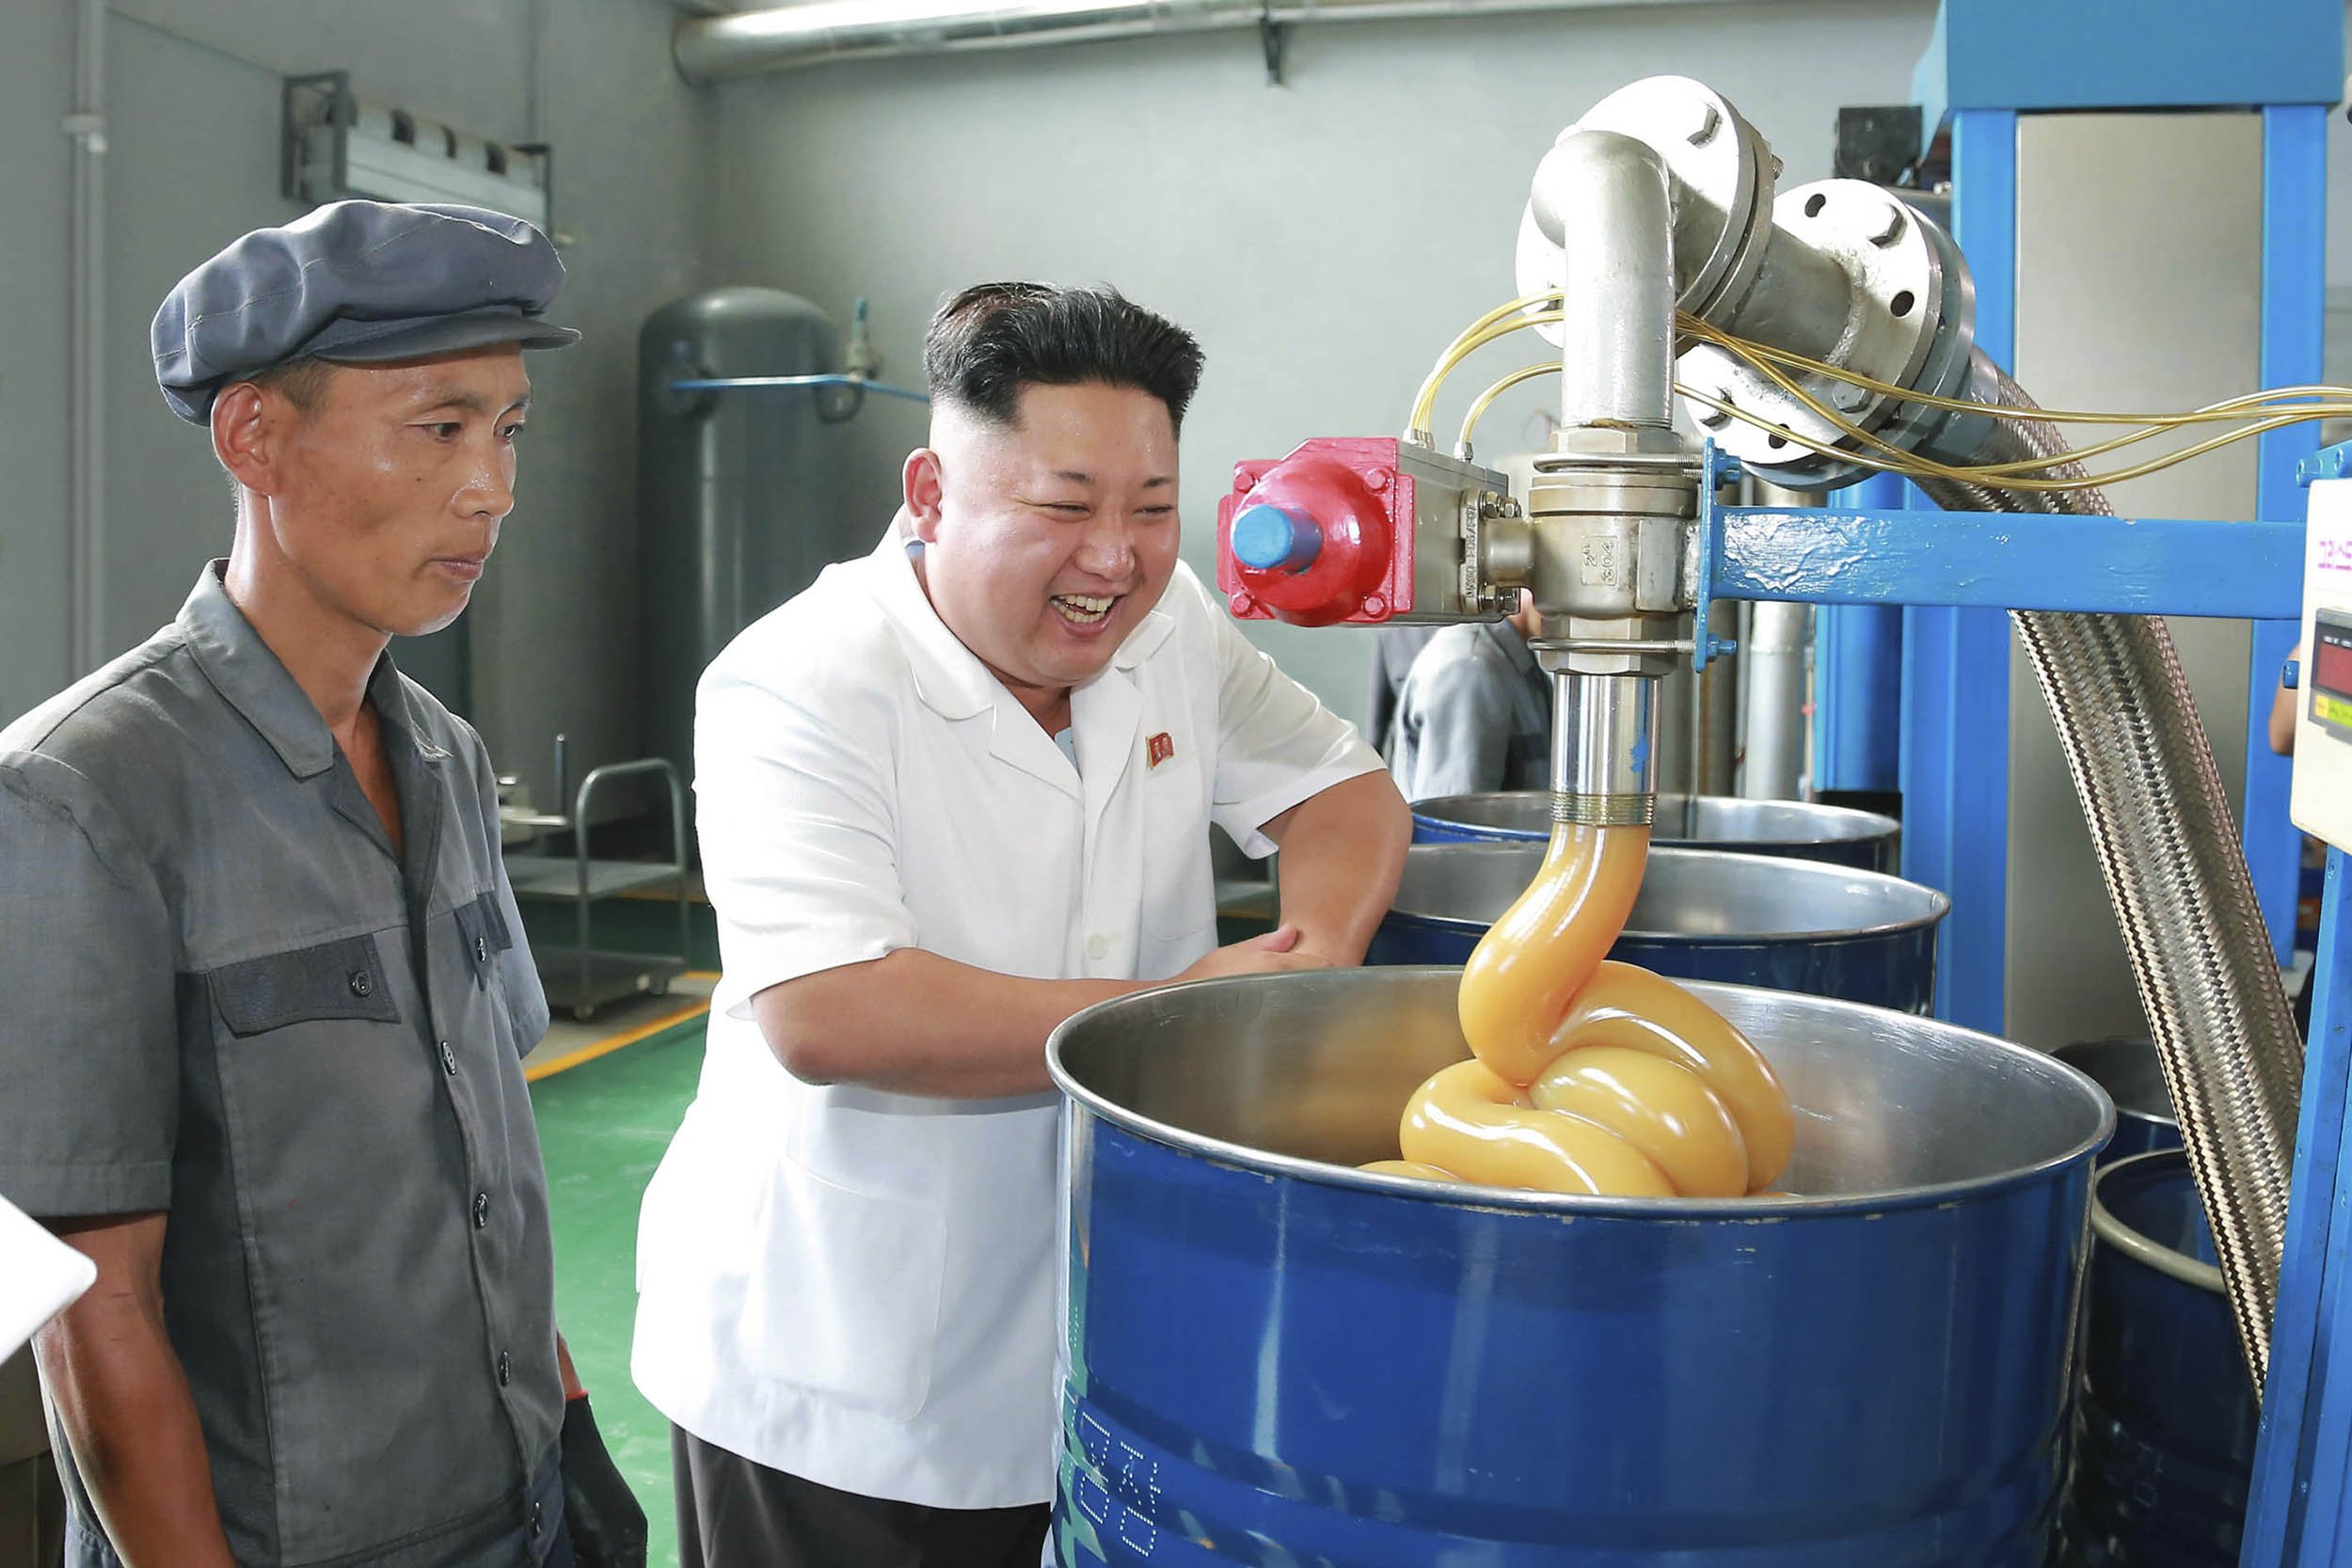 Slideshow: Look at Kim Jong Un Look at Things.